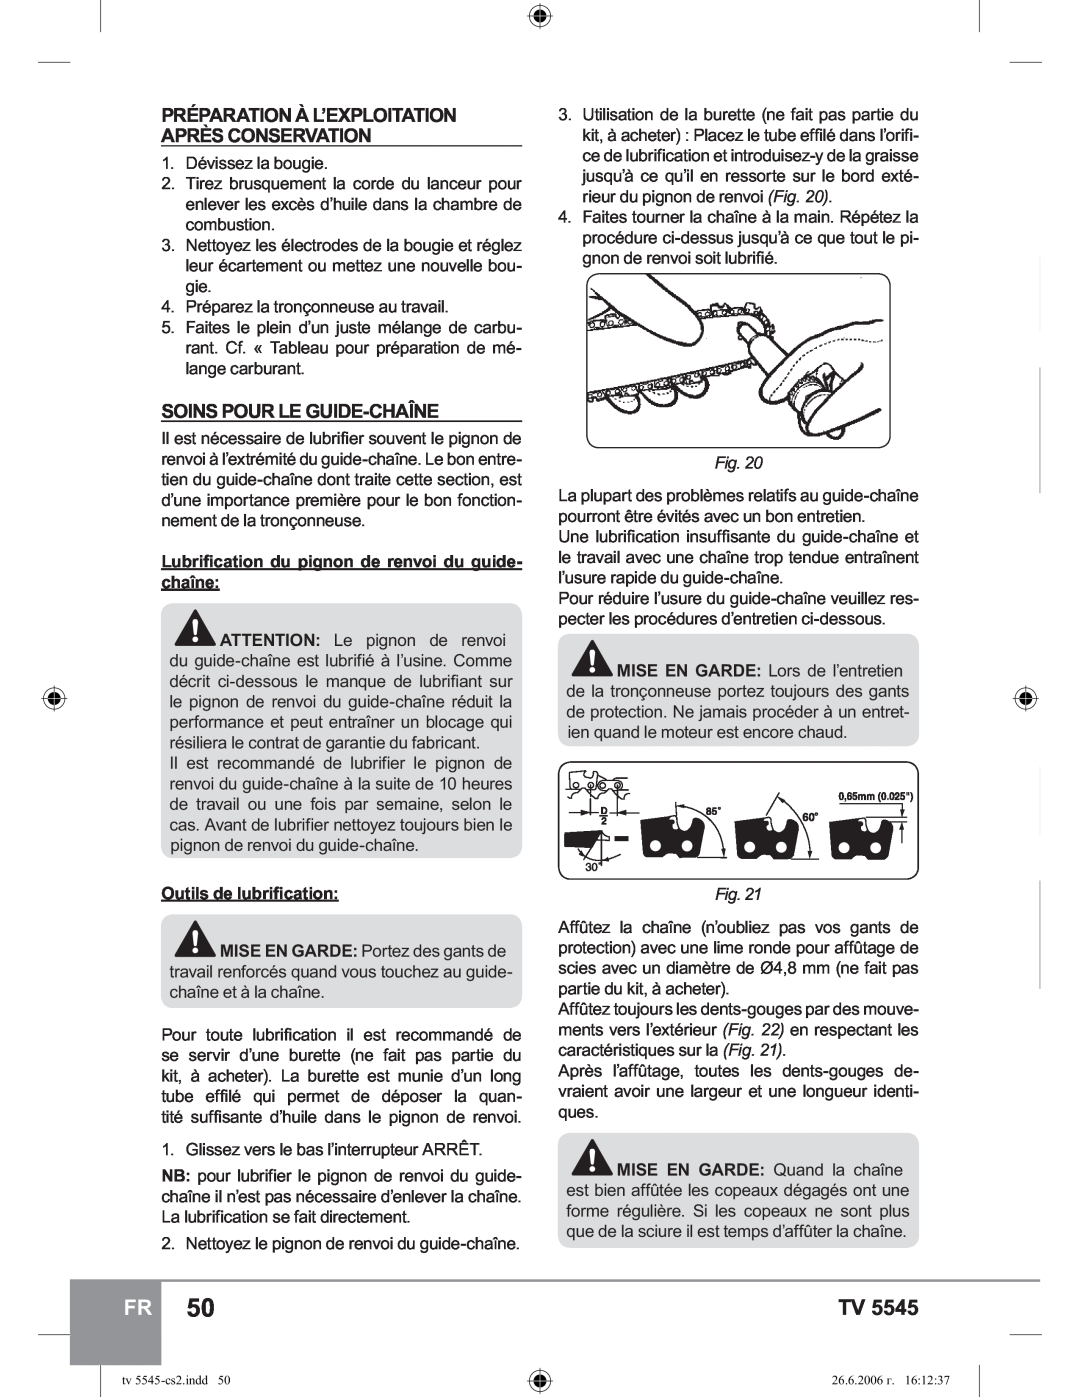 Sparky Group TV 5545 manual Soins Pour Le Guide-Chaîne, Préparation À L’Exploitation Après Conservation 